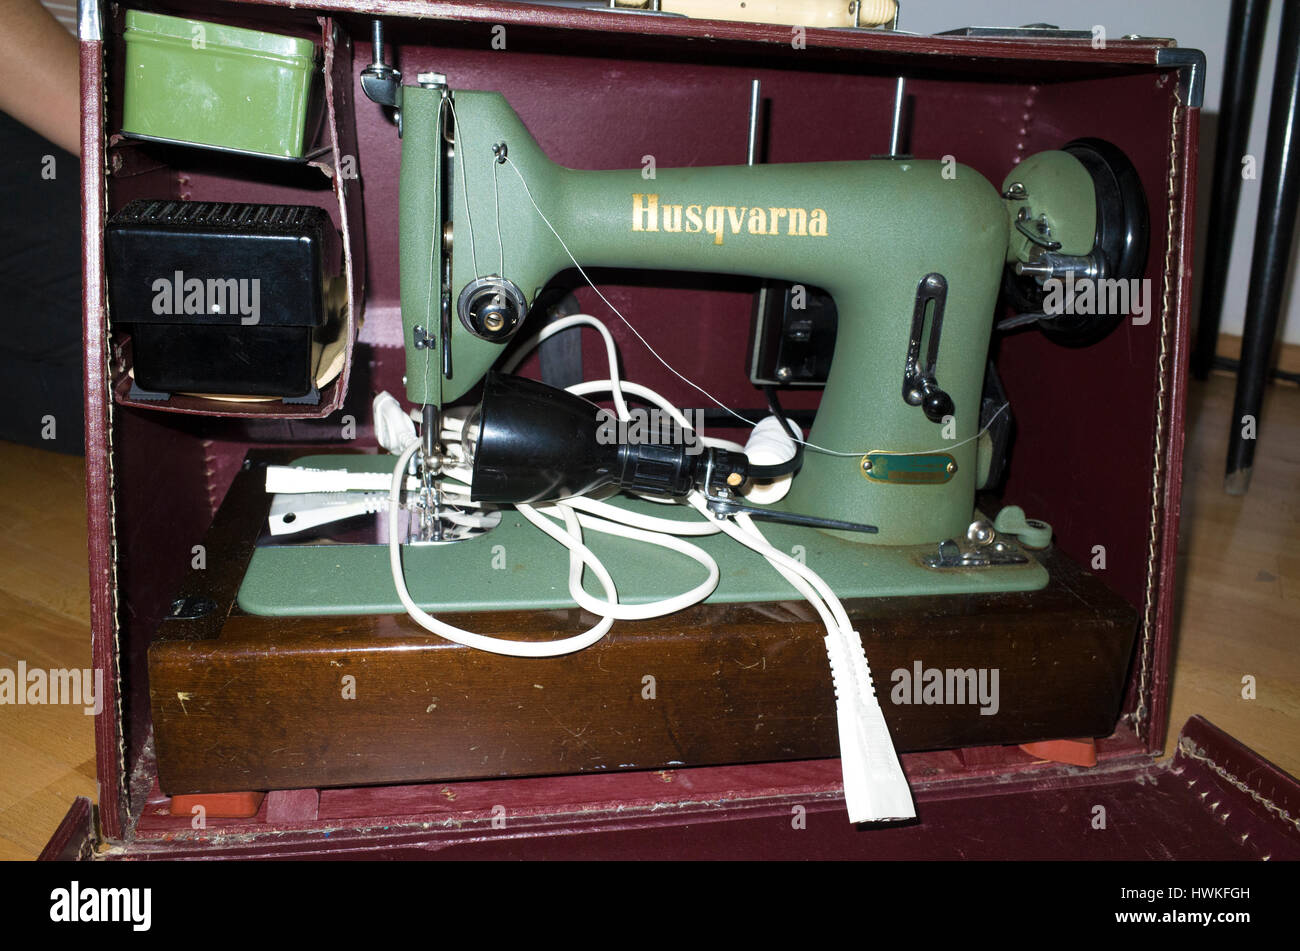 Vieux, mais la machine à coudre Husqvarna de travail à la maison. Zawady  Europe centrale Pologne Photo Stock - Alamy